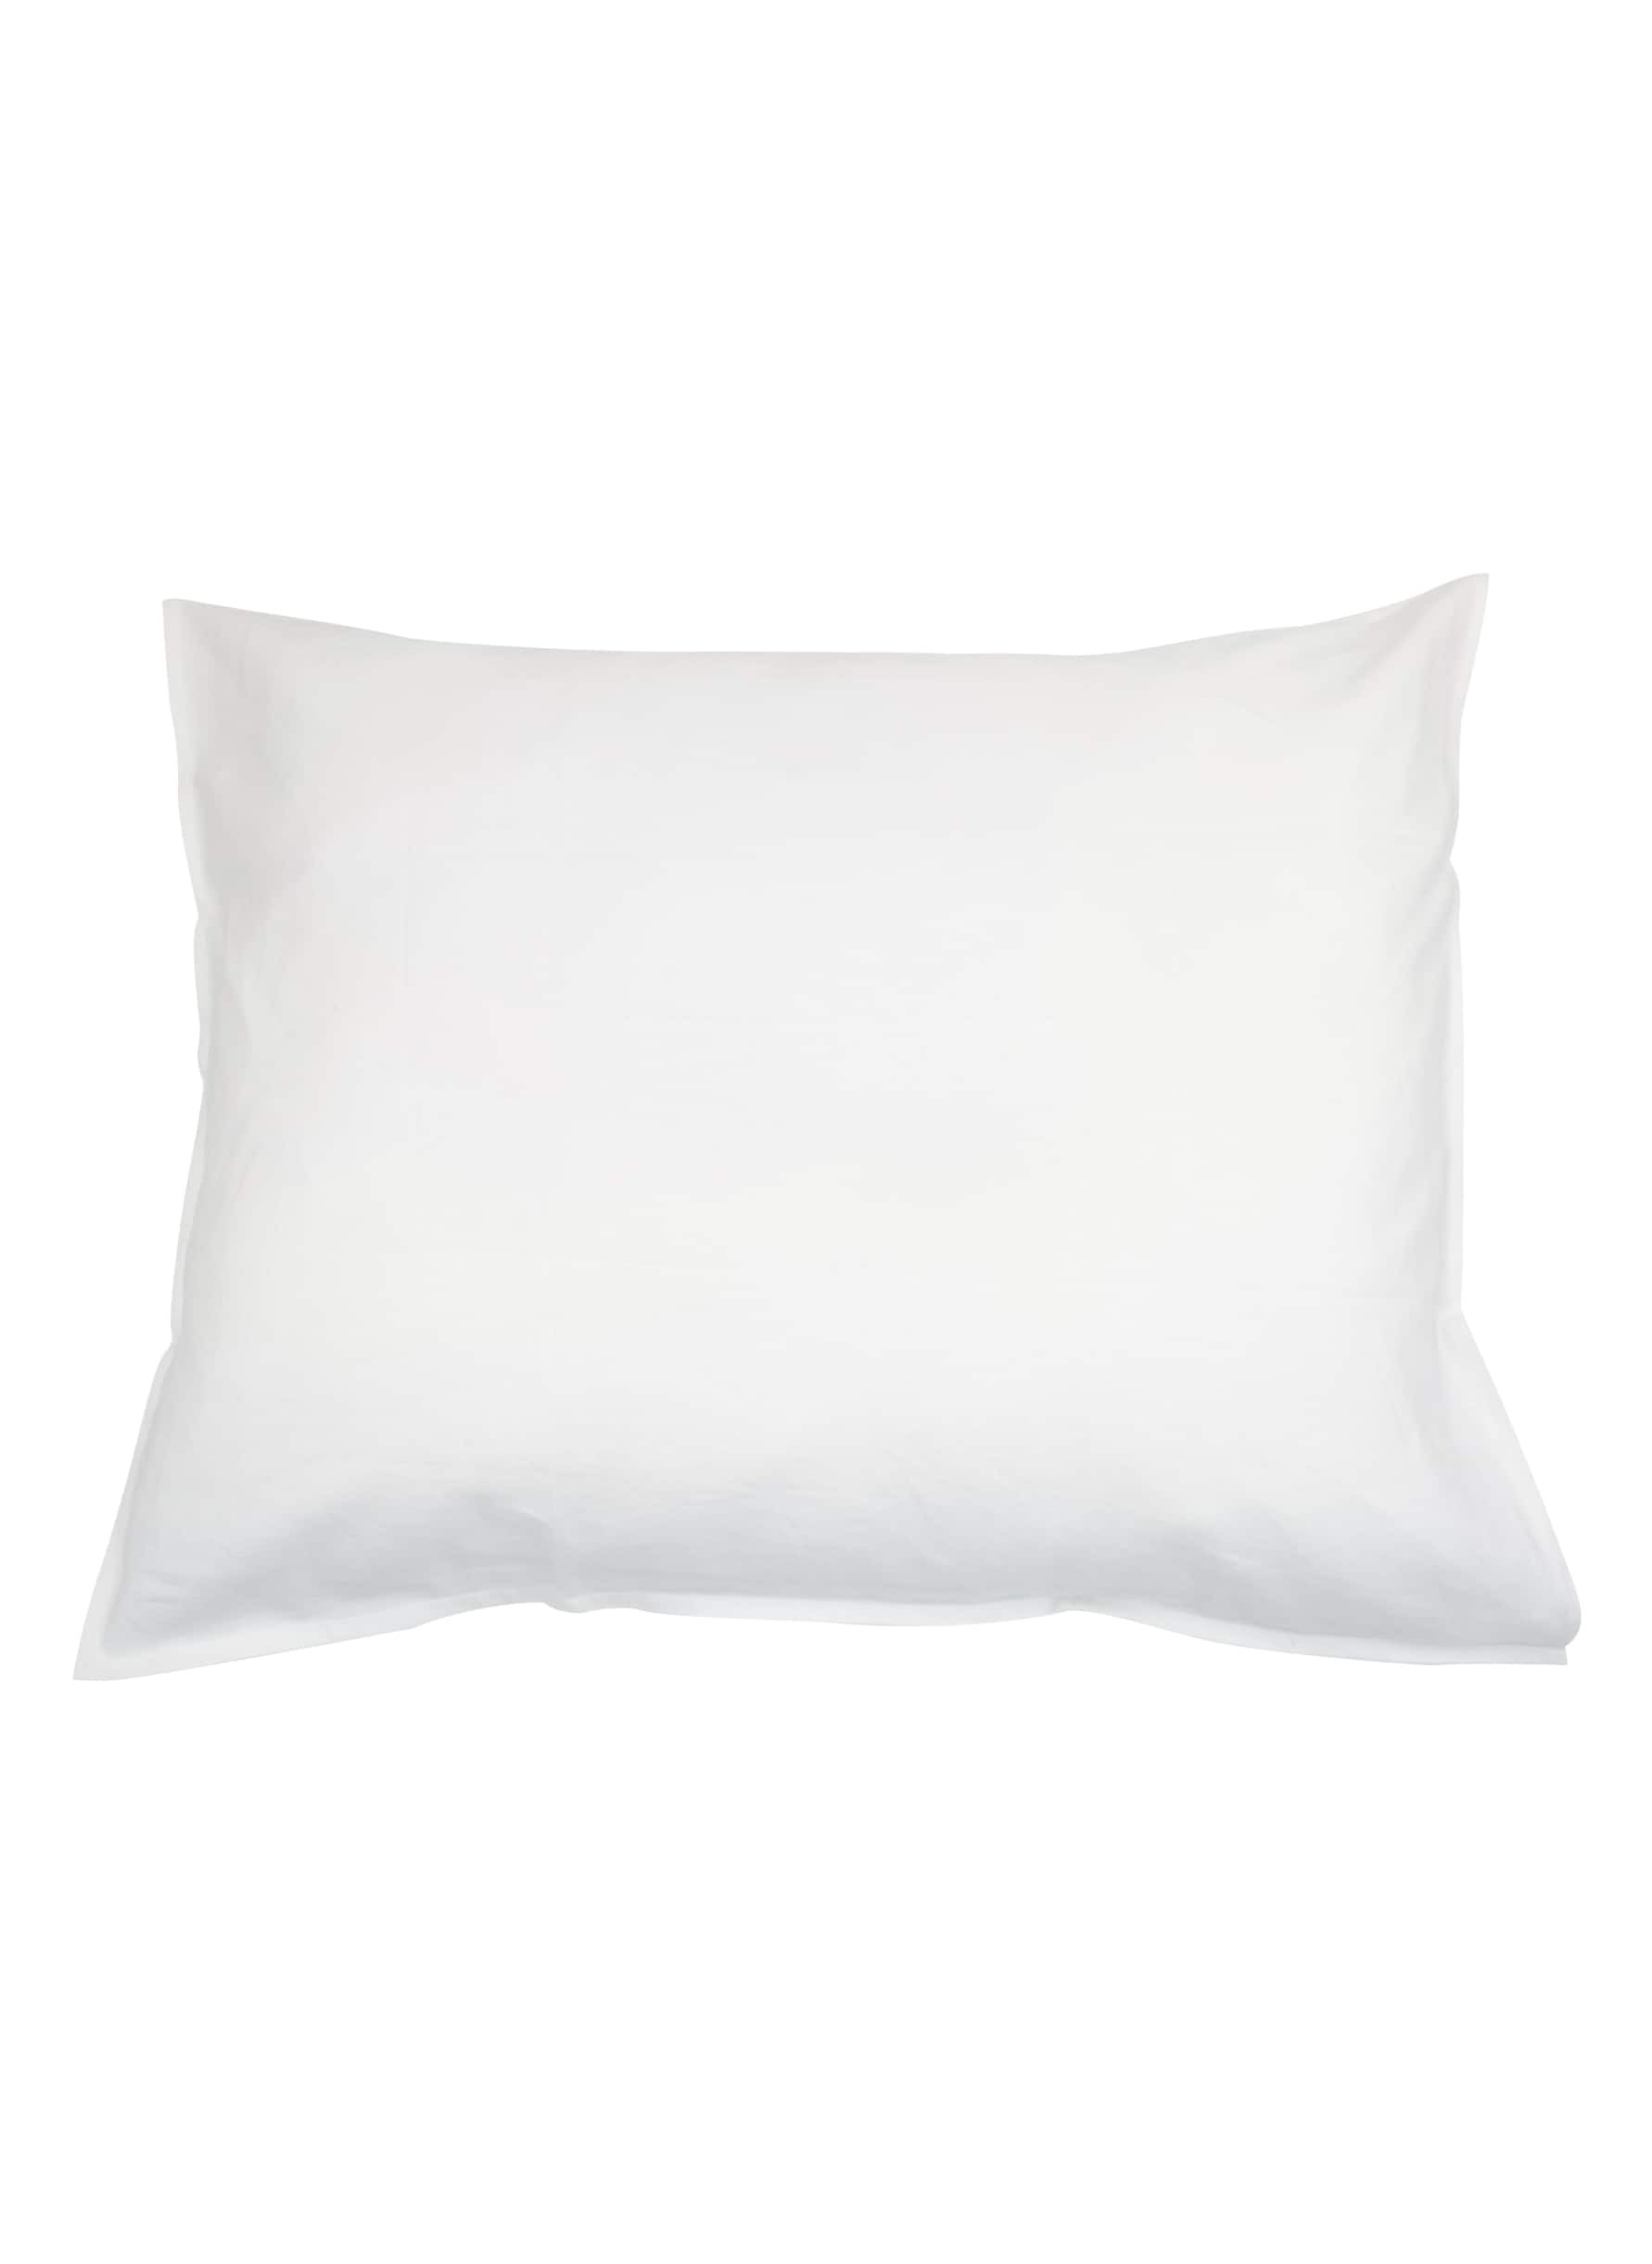 Pillowcase off white hemp/cotton